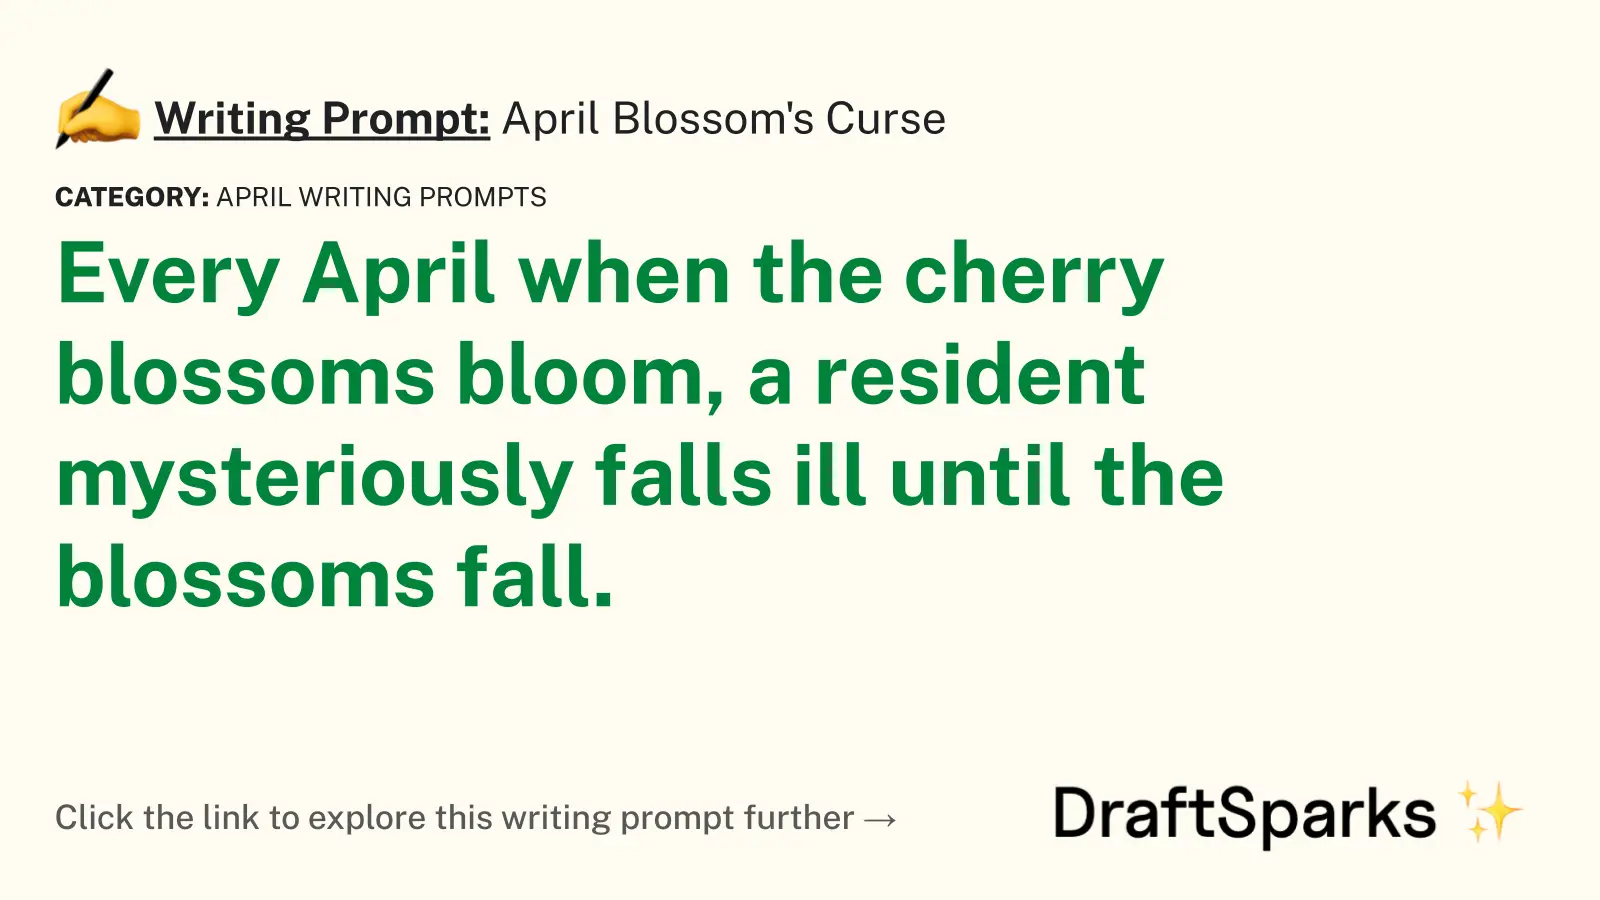 April Blossom’s Curse